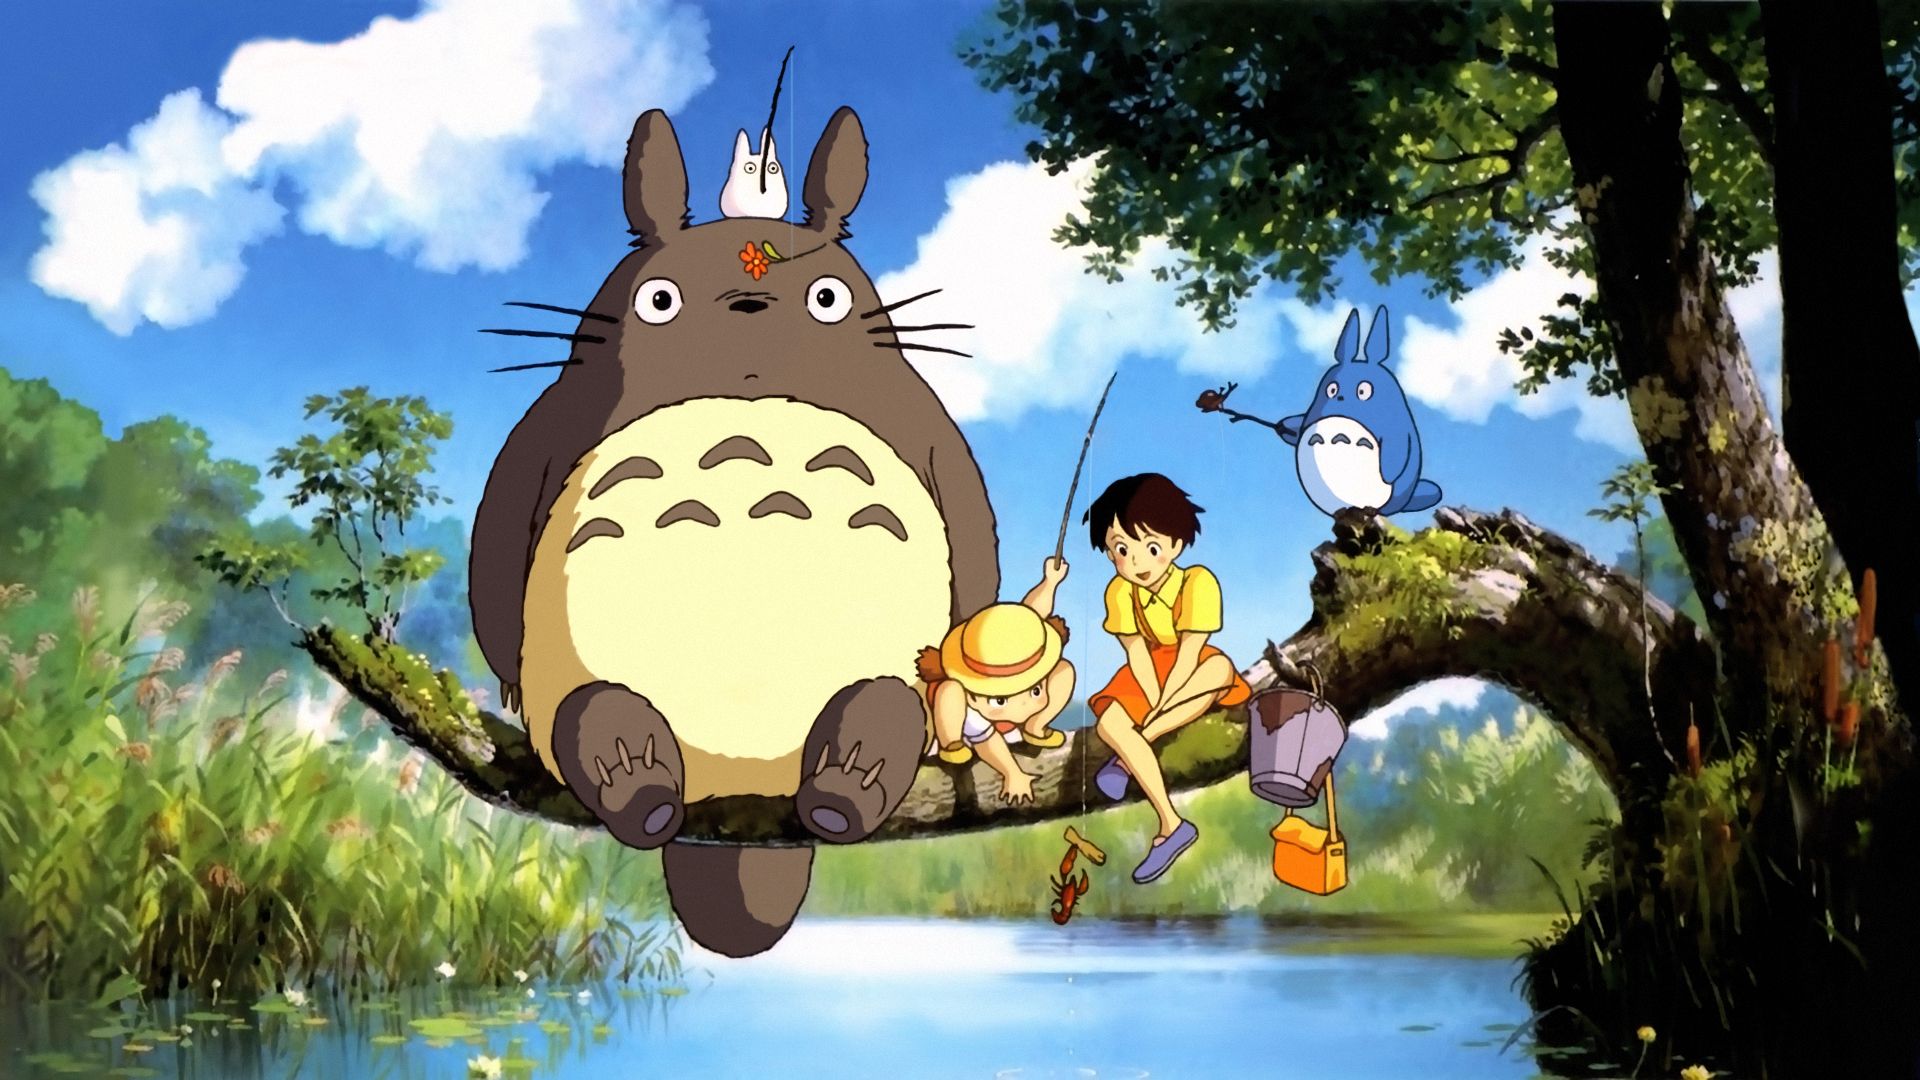 Studio Ghibli HD Wallpaper | 1920x1080 | ID:45794